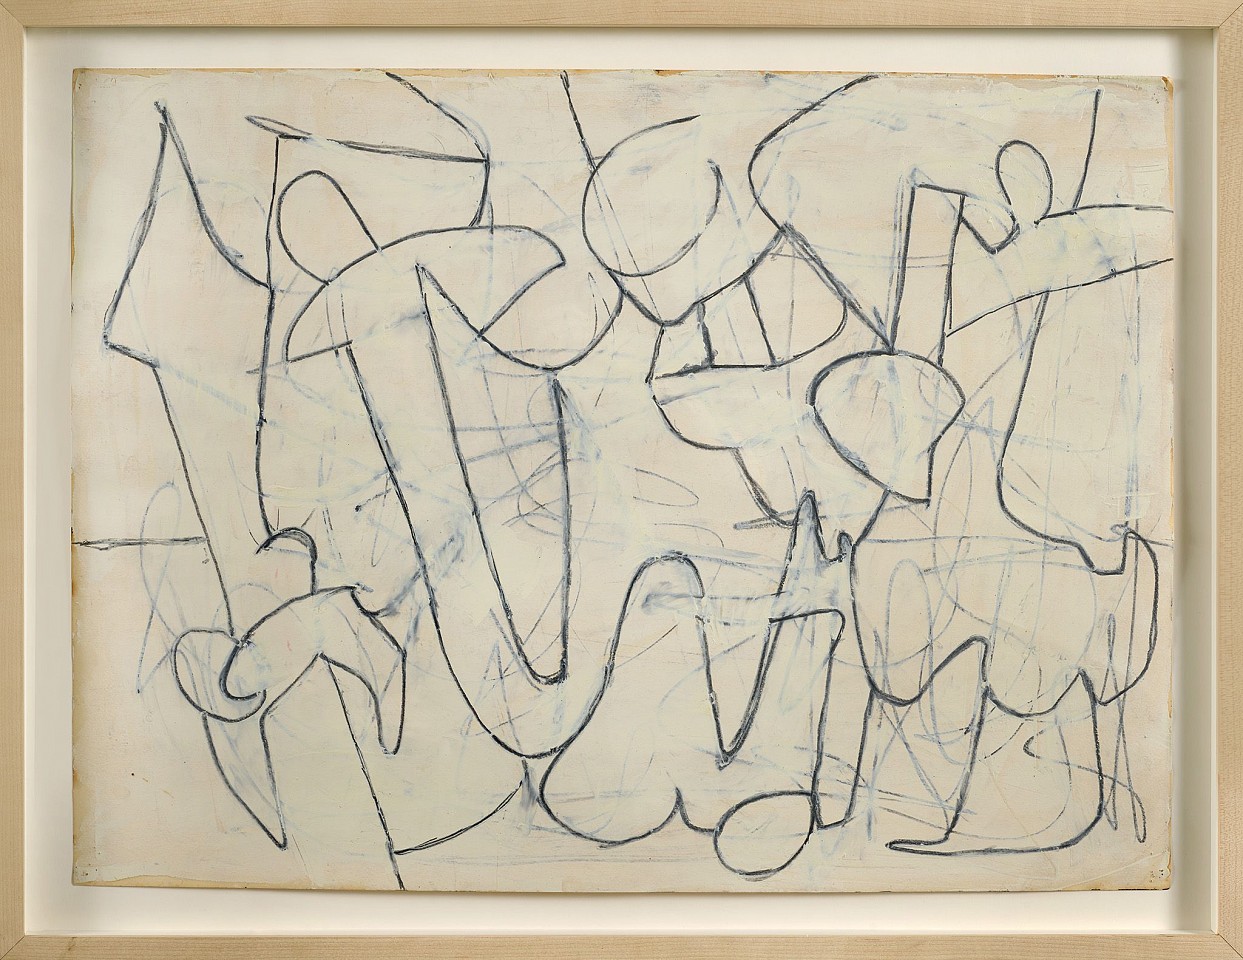 Charlotte Park, Untitled, c. 1950
Gouache and oil on paper, 18 x 24 in. (45.7 x 61 cm)
PAR-00103